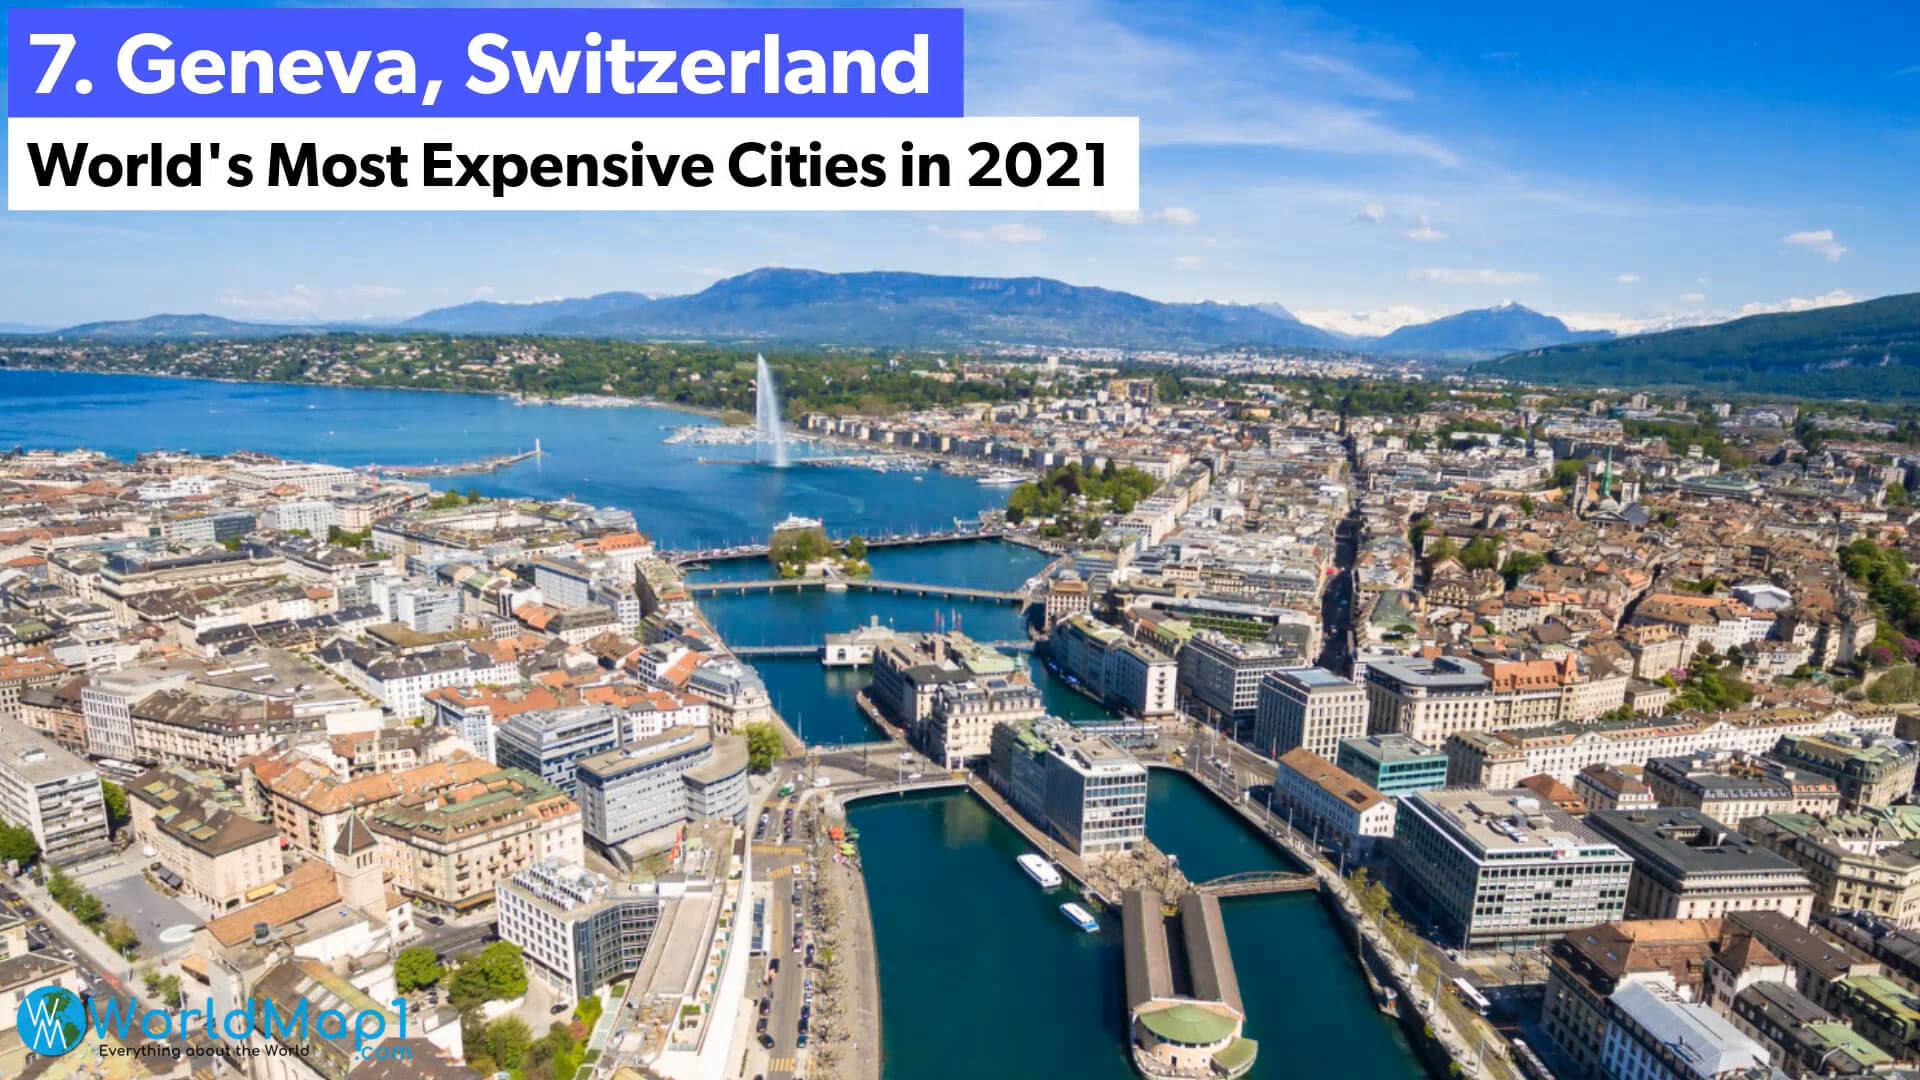 World's Most Expensive Cities - Geneva, Switzerland